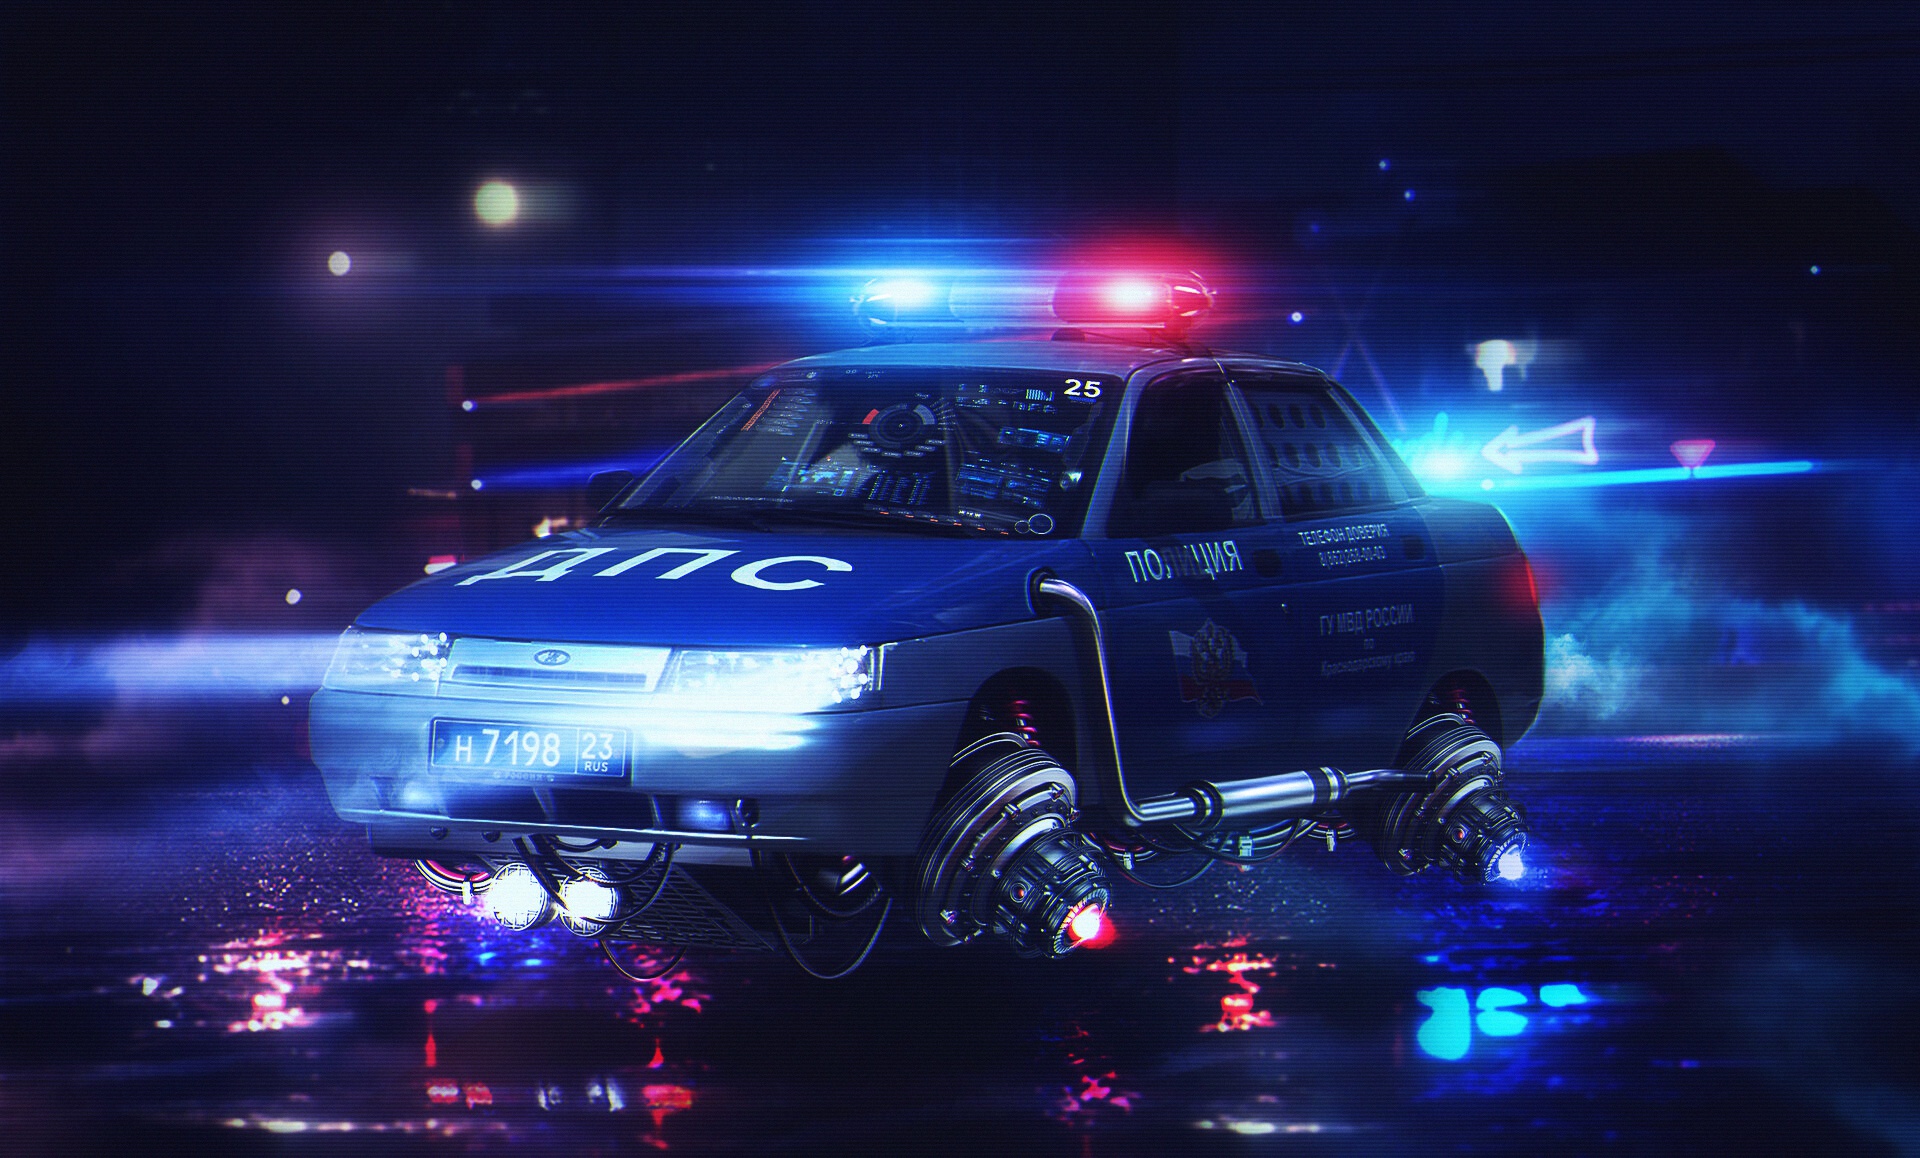 Cyberpunk police car sound фото 22